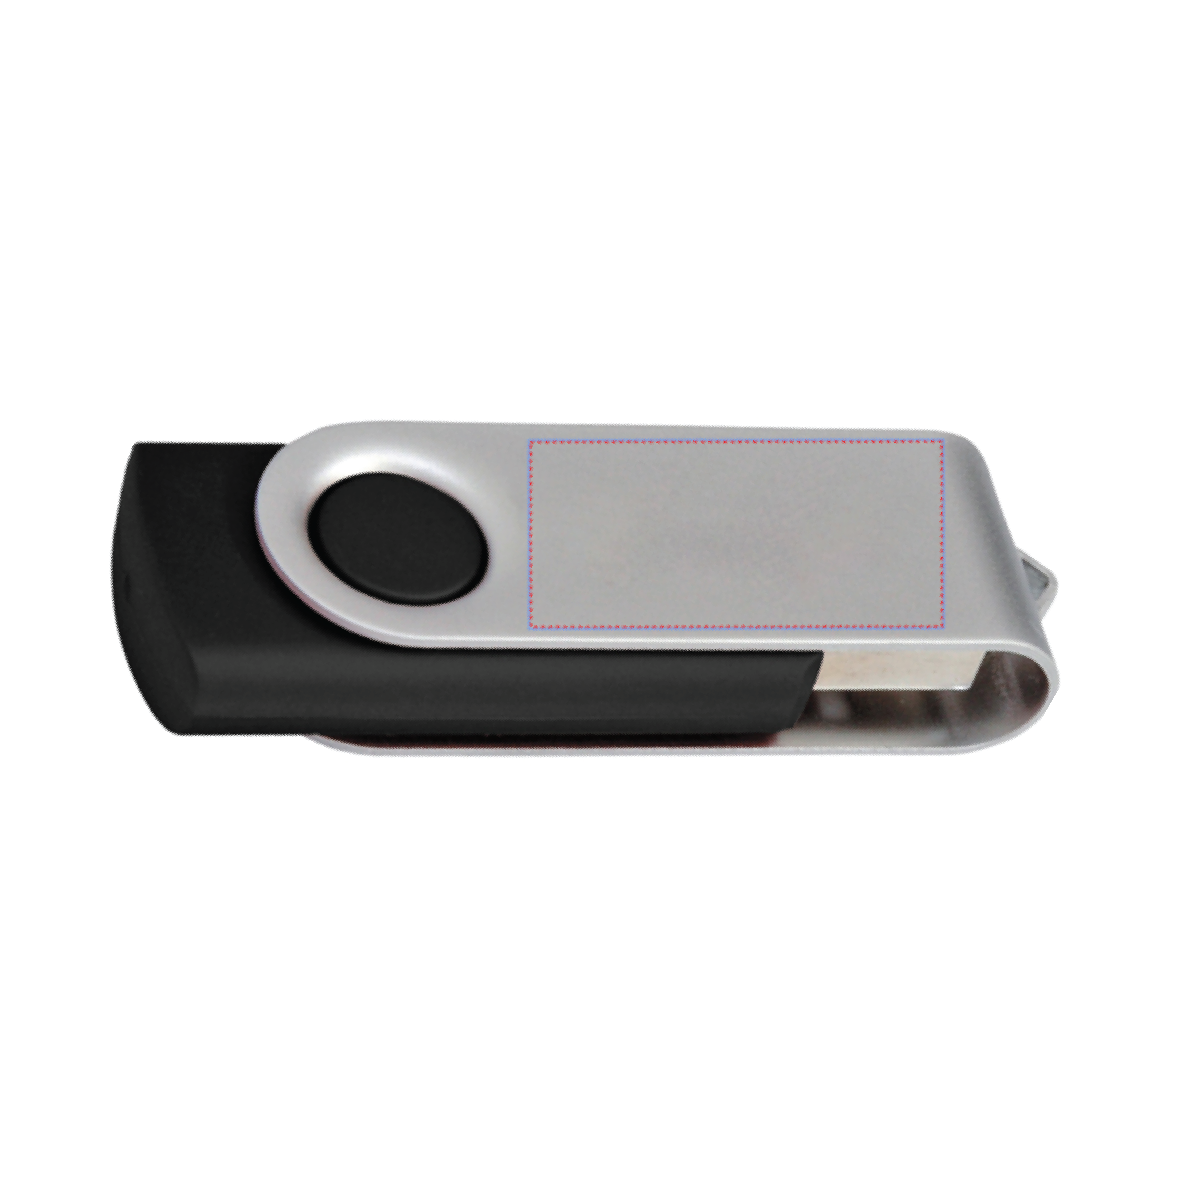 Black 8 GB Folding USB 2.0 Flash Drive